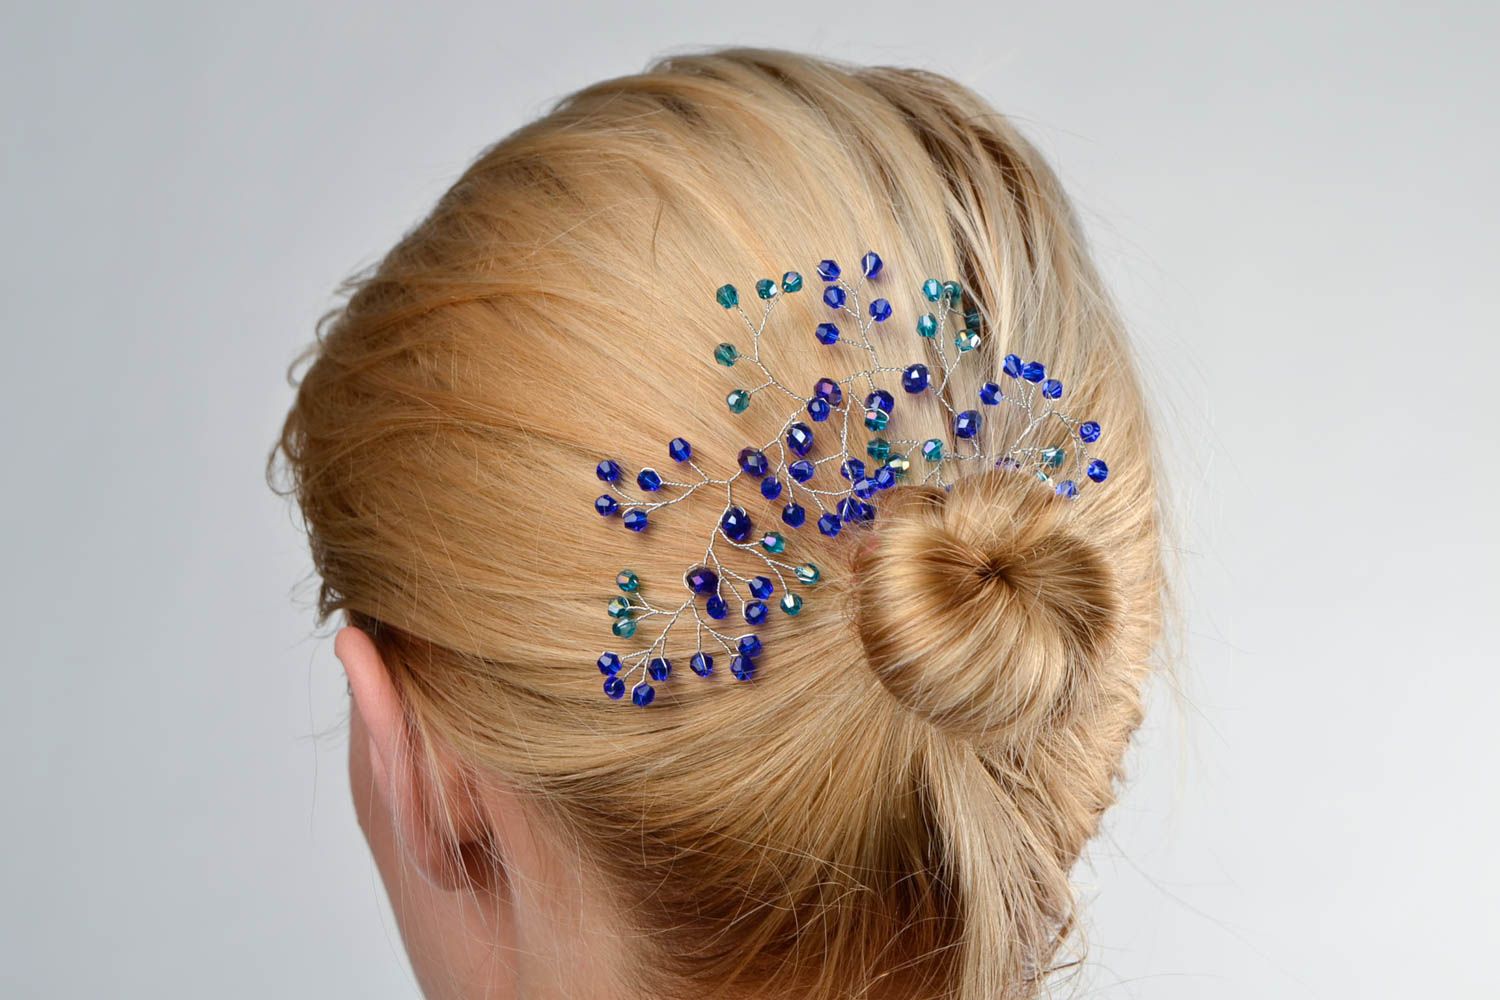 Handmade hair pin designer hair pin unusual hair accessory gift ideas photo 1